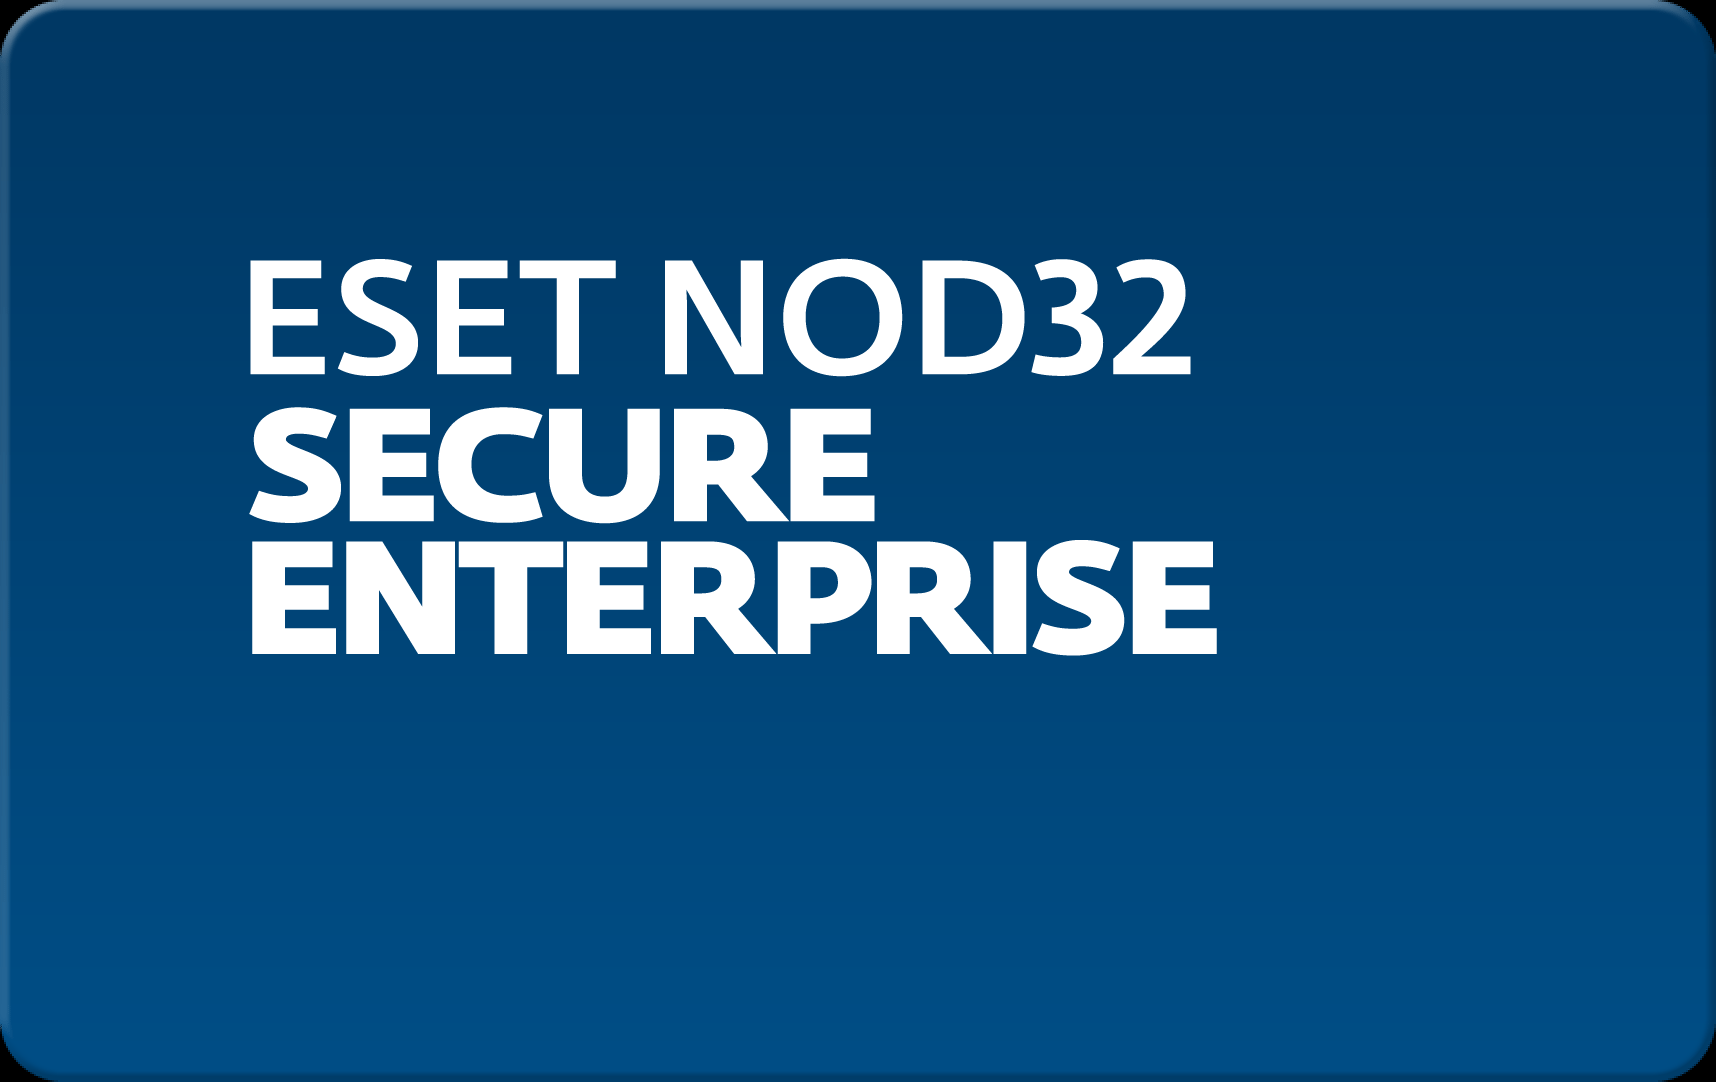        Eset NOD32 Secure Enterprise  157  NOD32-ESE-NS-1-157  #1